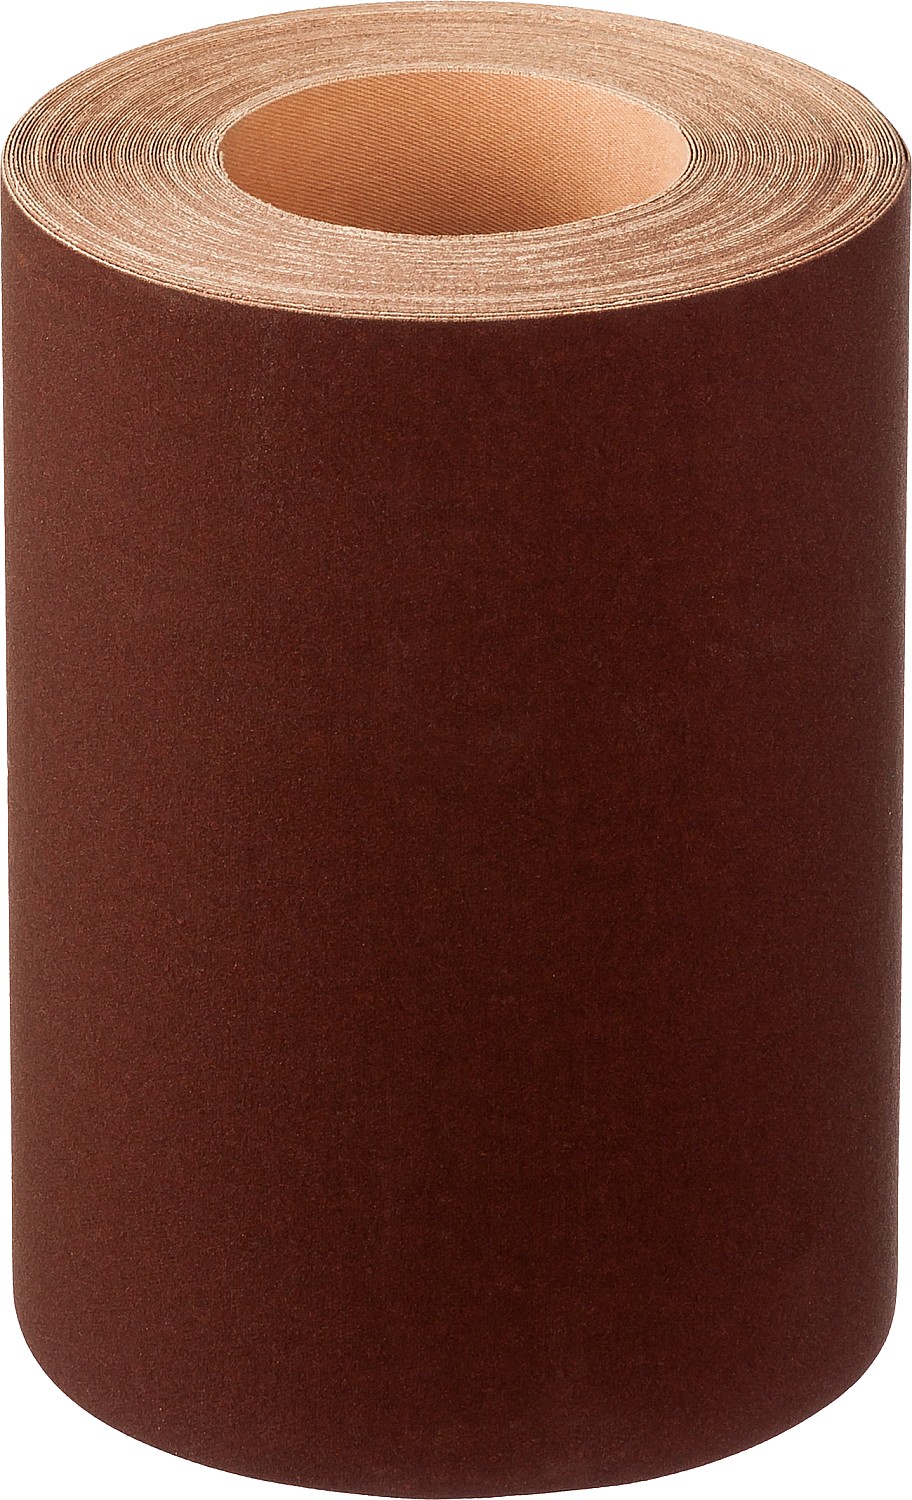 Лист шлифовальный для вибрационных шлифмашин БАЗ ds_35503-00-200 шлифовальный лист на тканевой основе сибртех